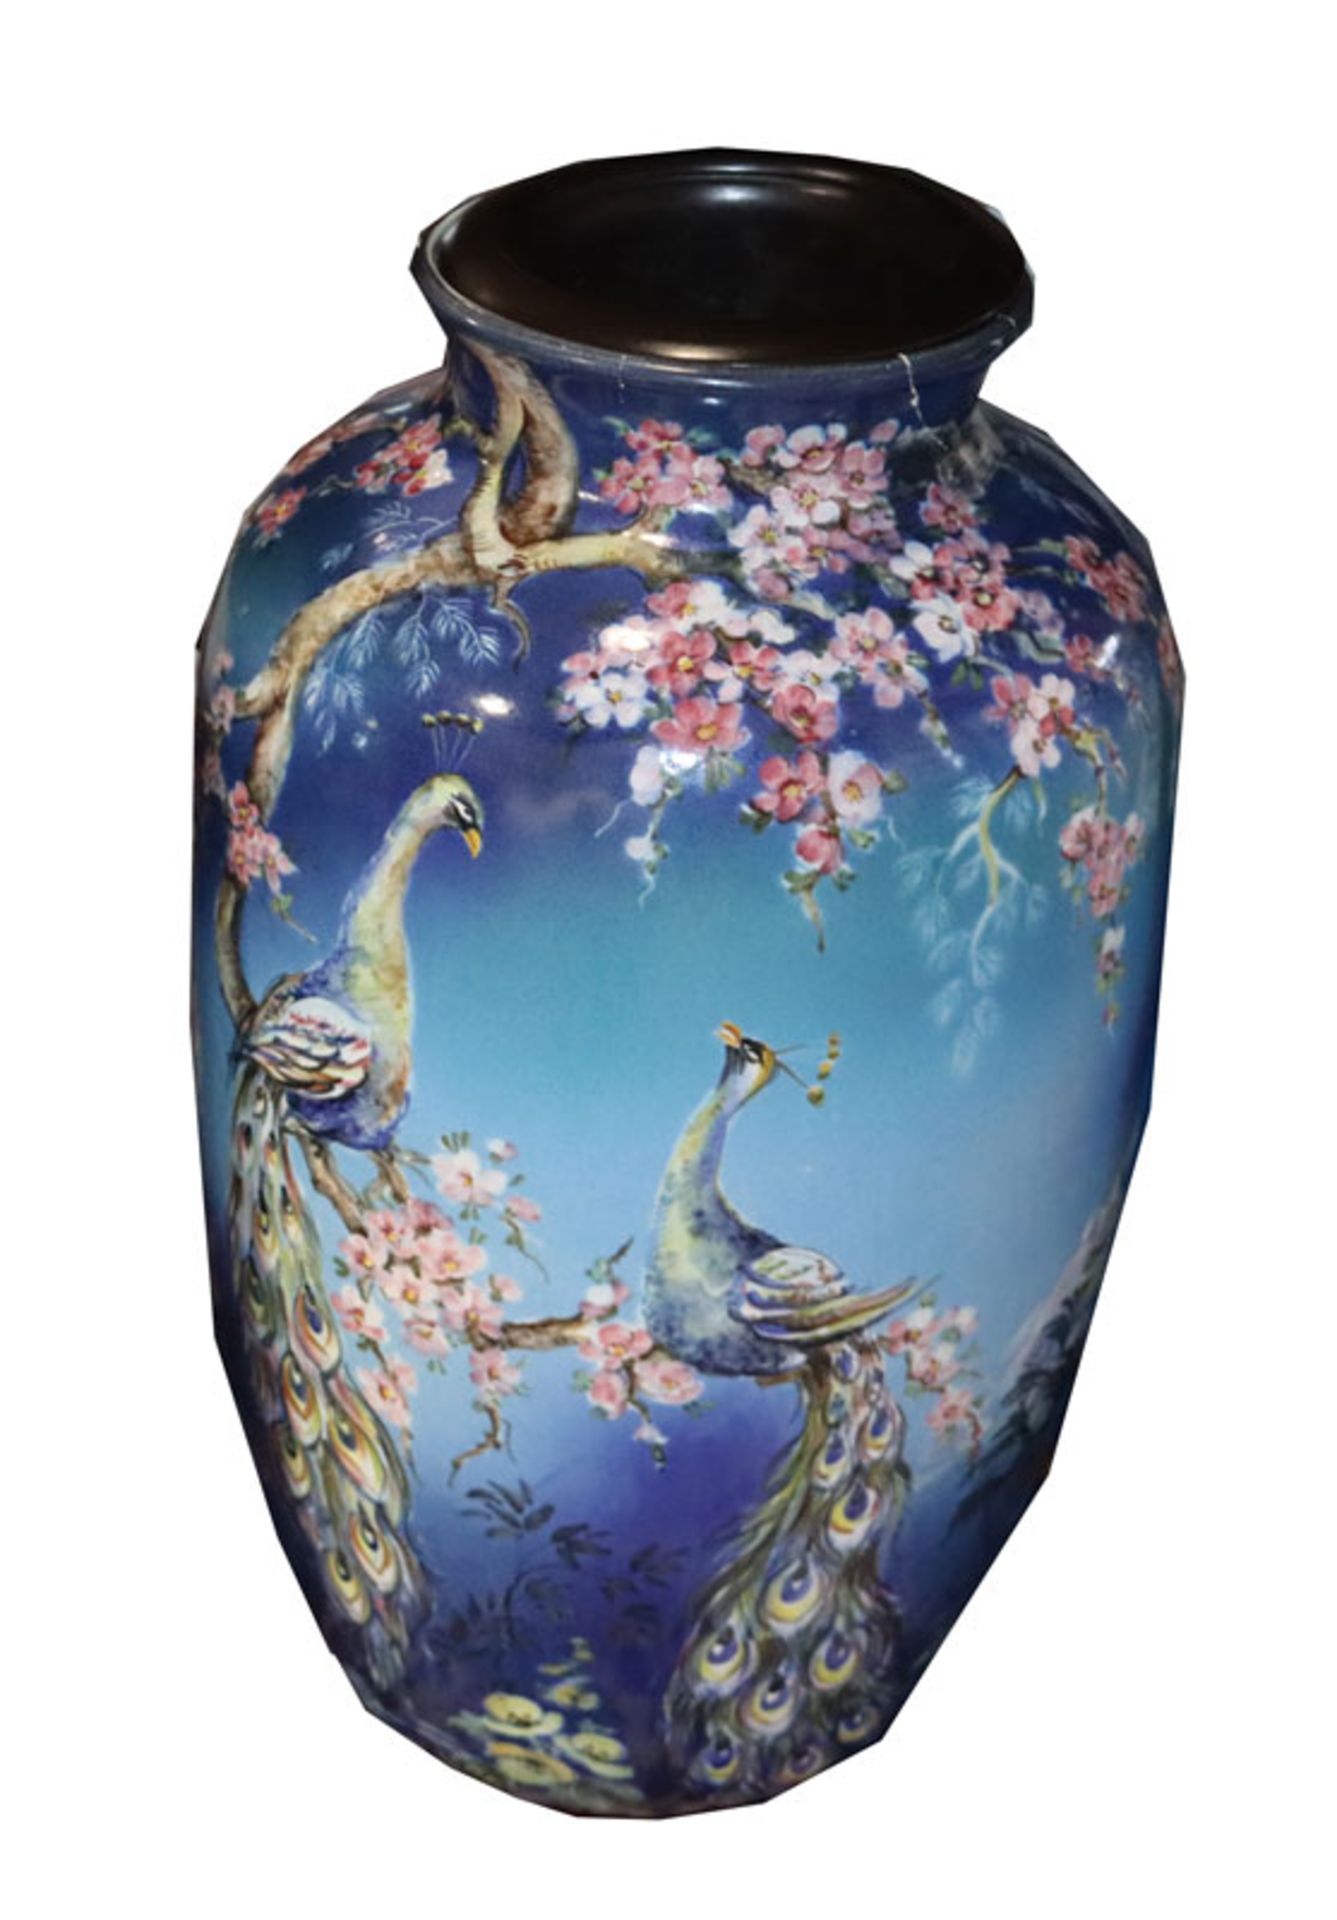 Keramik Bodenvase mit asiatischem Dekor, Kirschblüten und Pfau, H 63 cm, D 31 cm